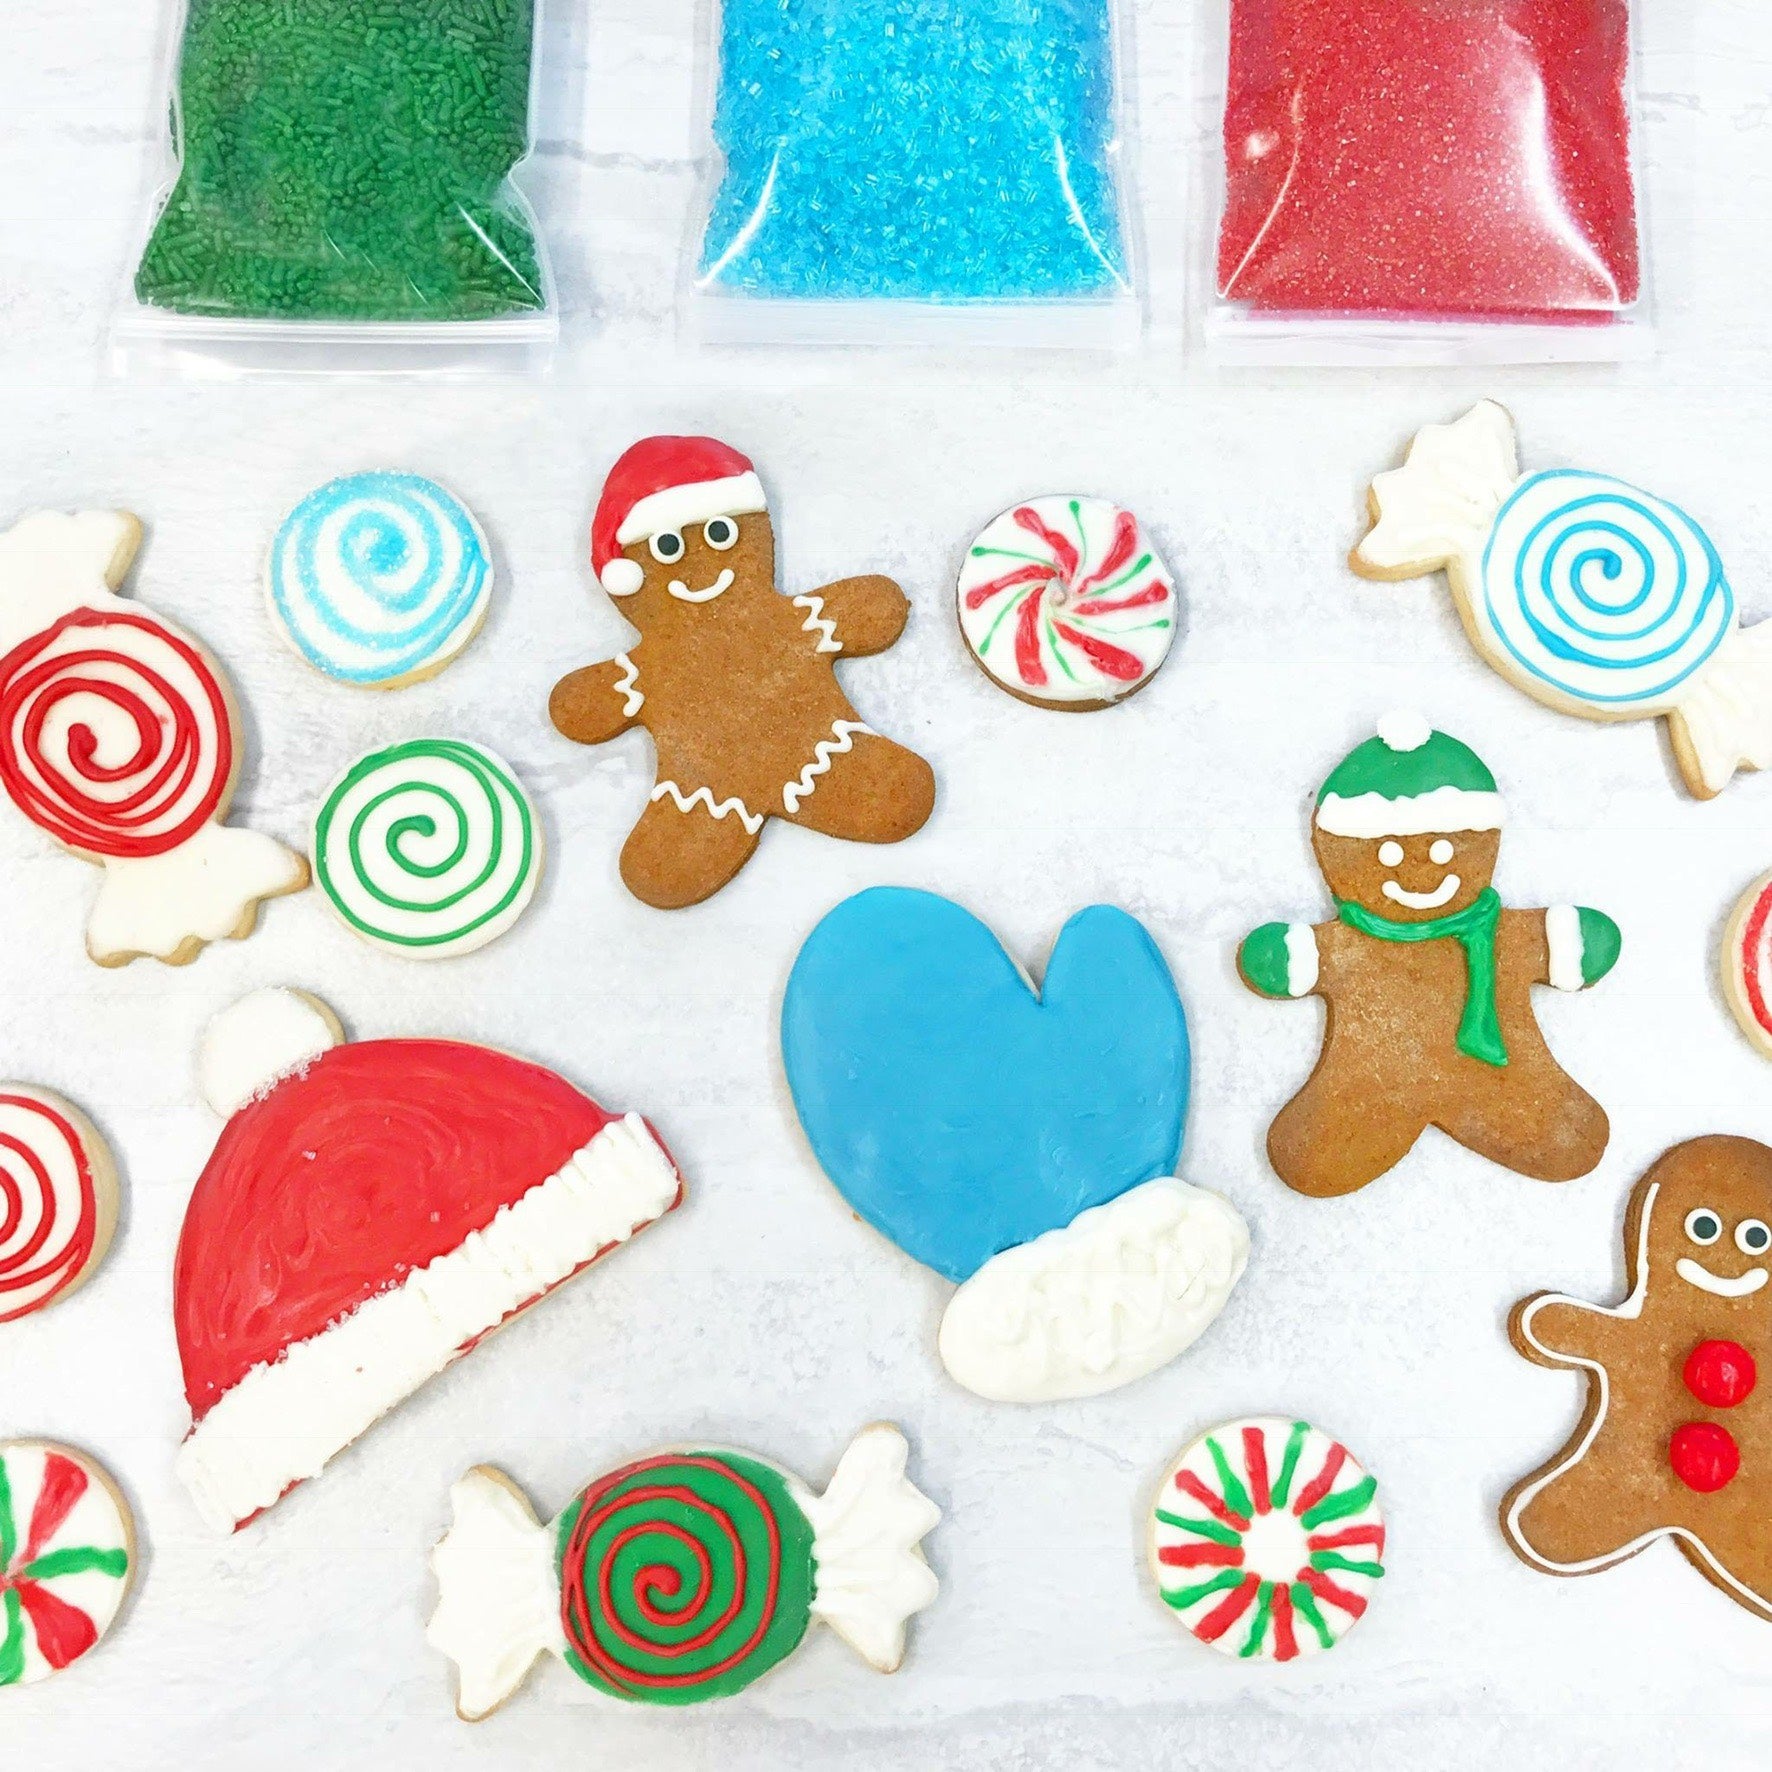 Cookie Decorating Supplies, Food Coloring Gels, Sprinkles, Sanding